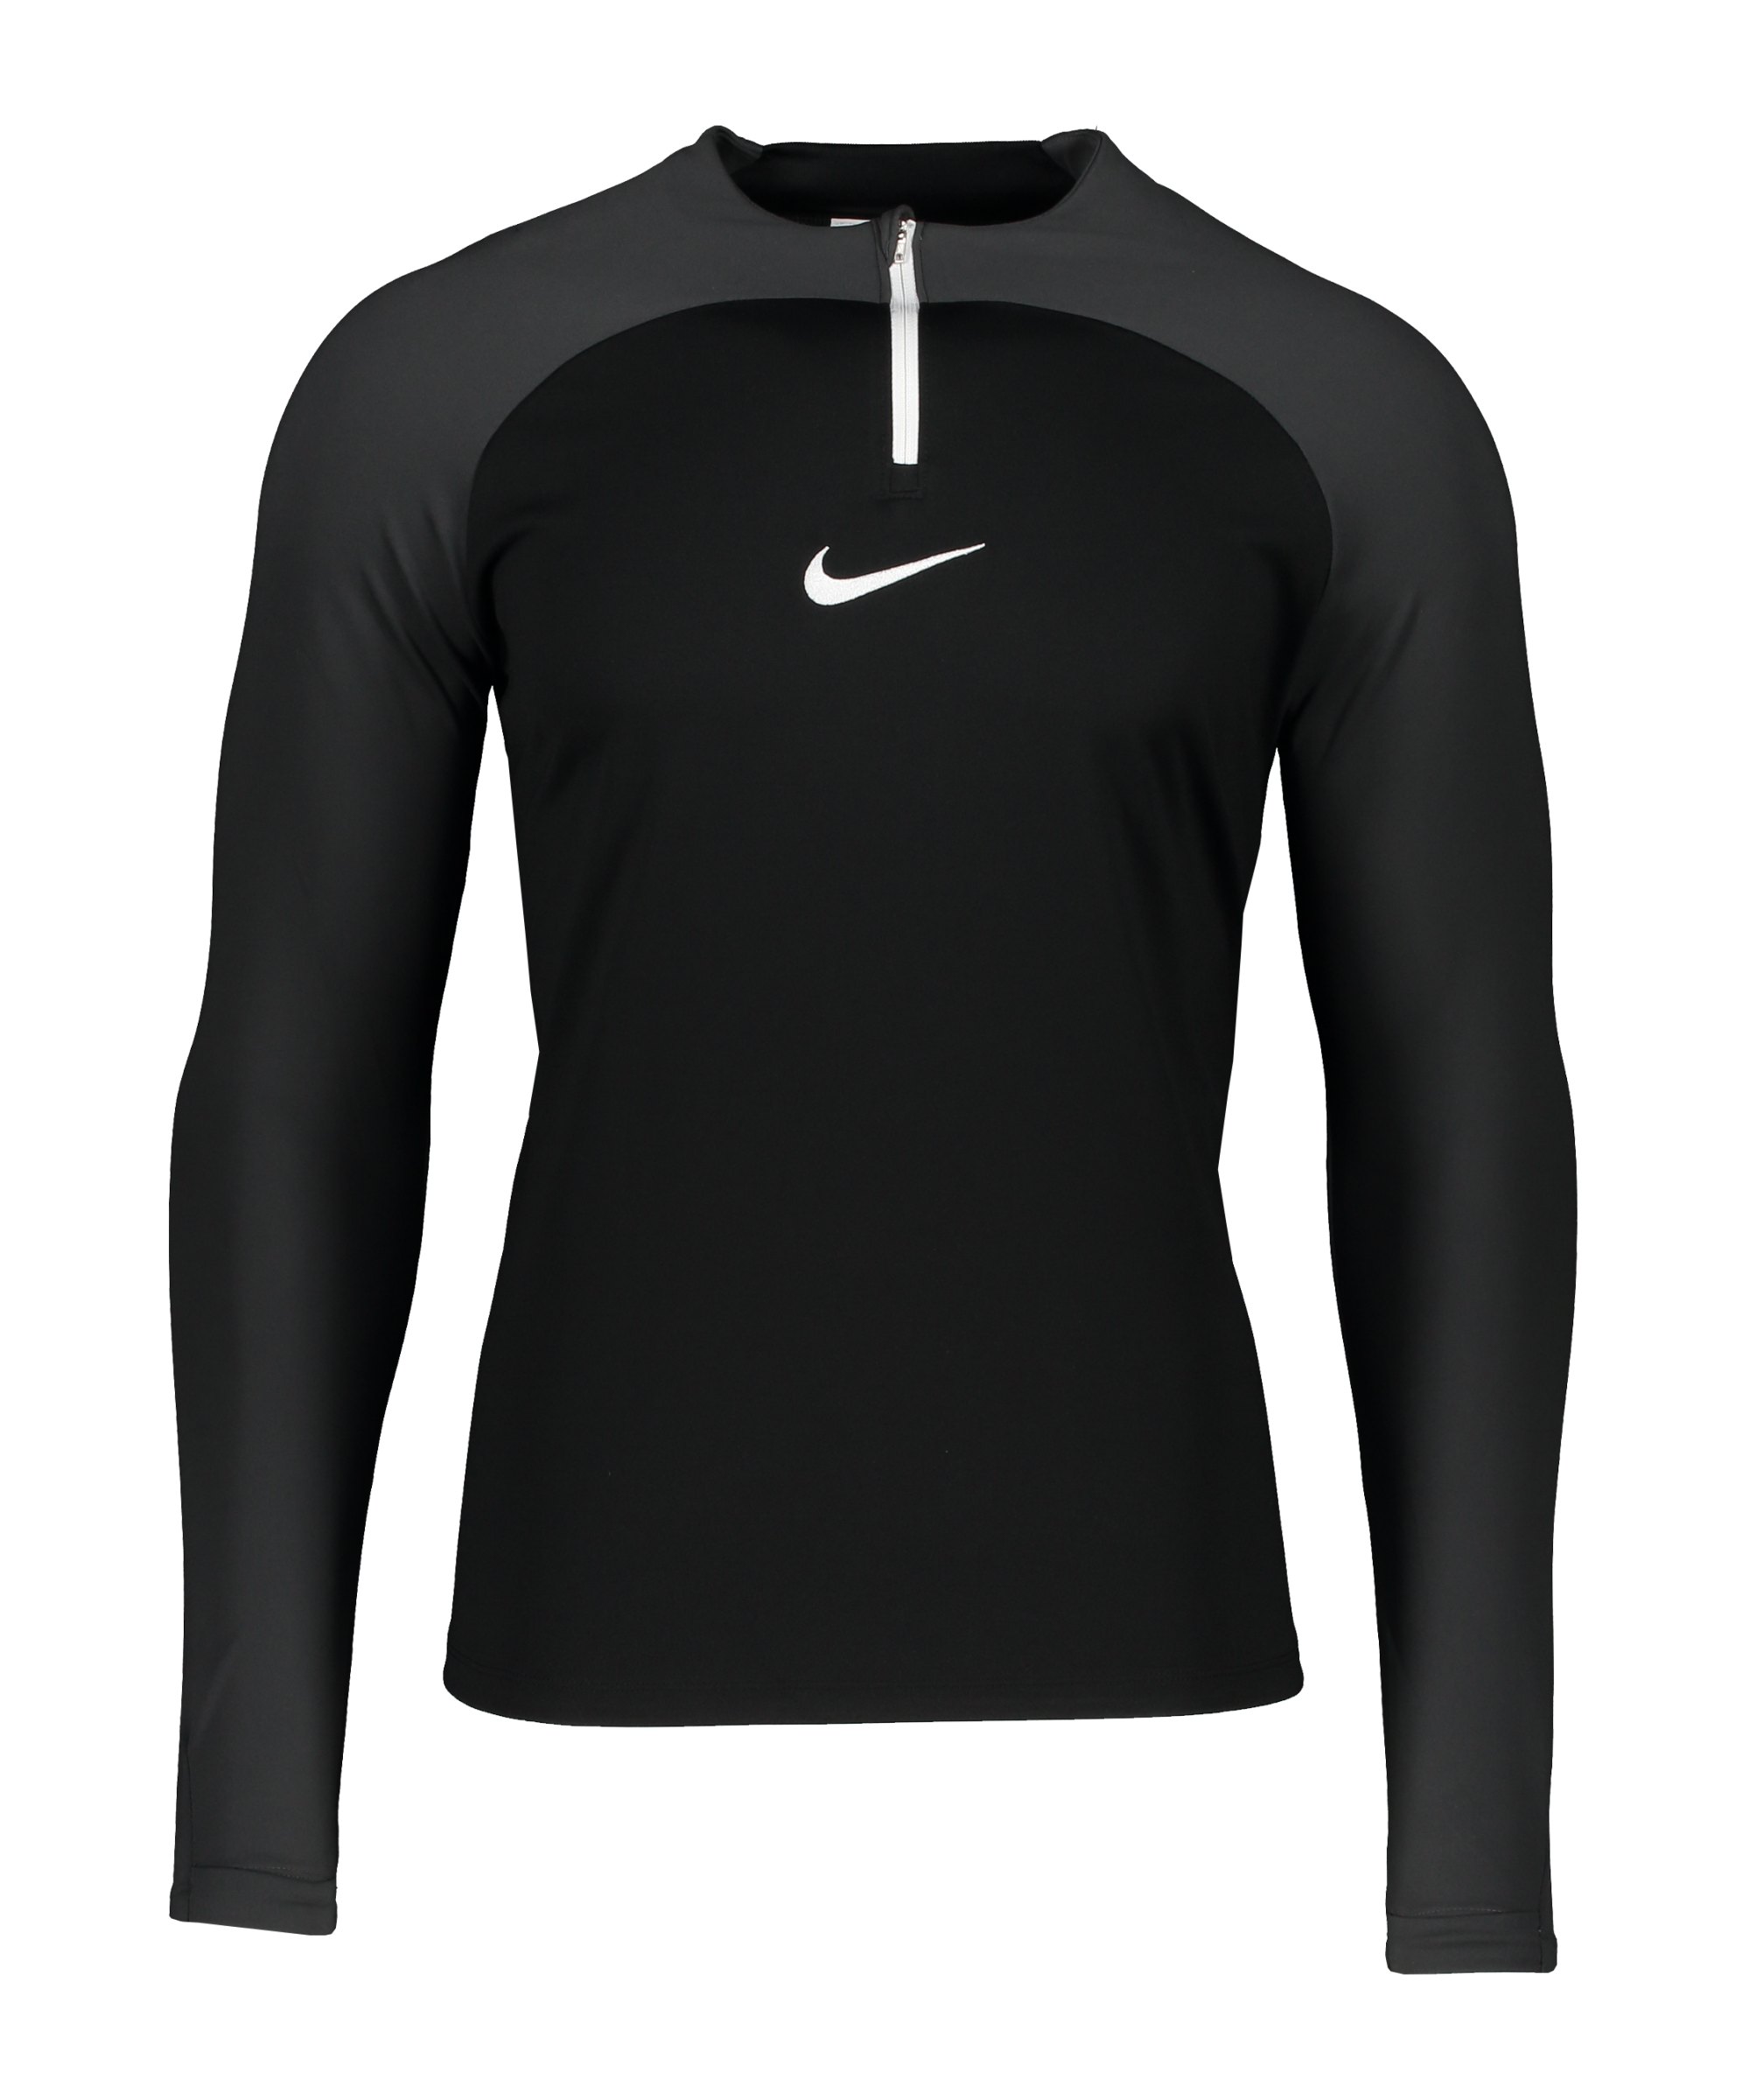 Nike Academy Pro Drill Top Schwarz Grau F011 - schwarz